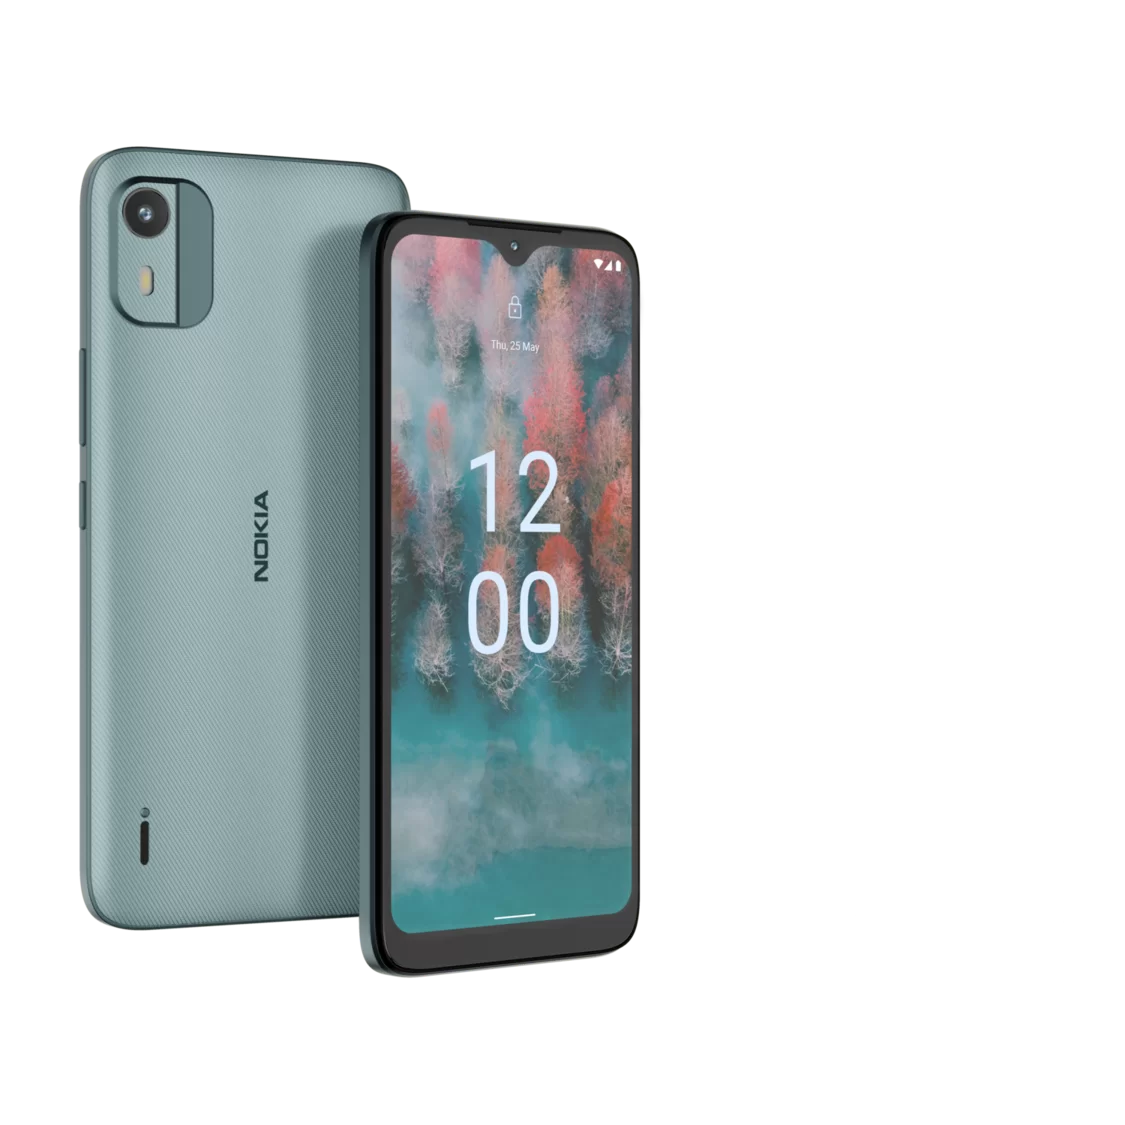 Nokia C12 01 | Nokia C12 | Nokia C12 ตระกูล C ซีรีส์ พร้อมขาย 2 ก.พ.นี้ เพียง 2,990 บาท